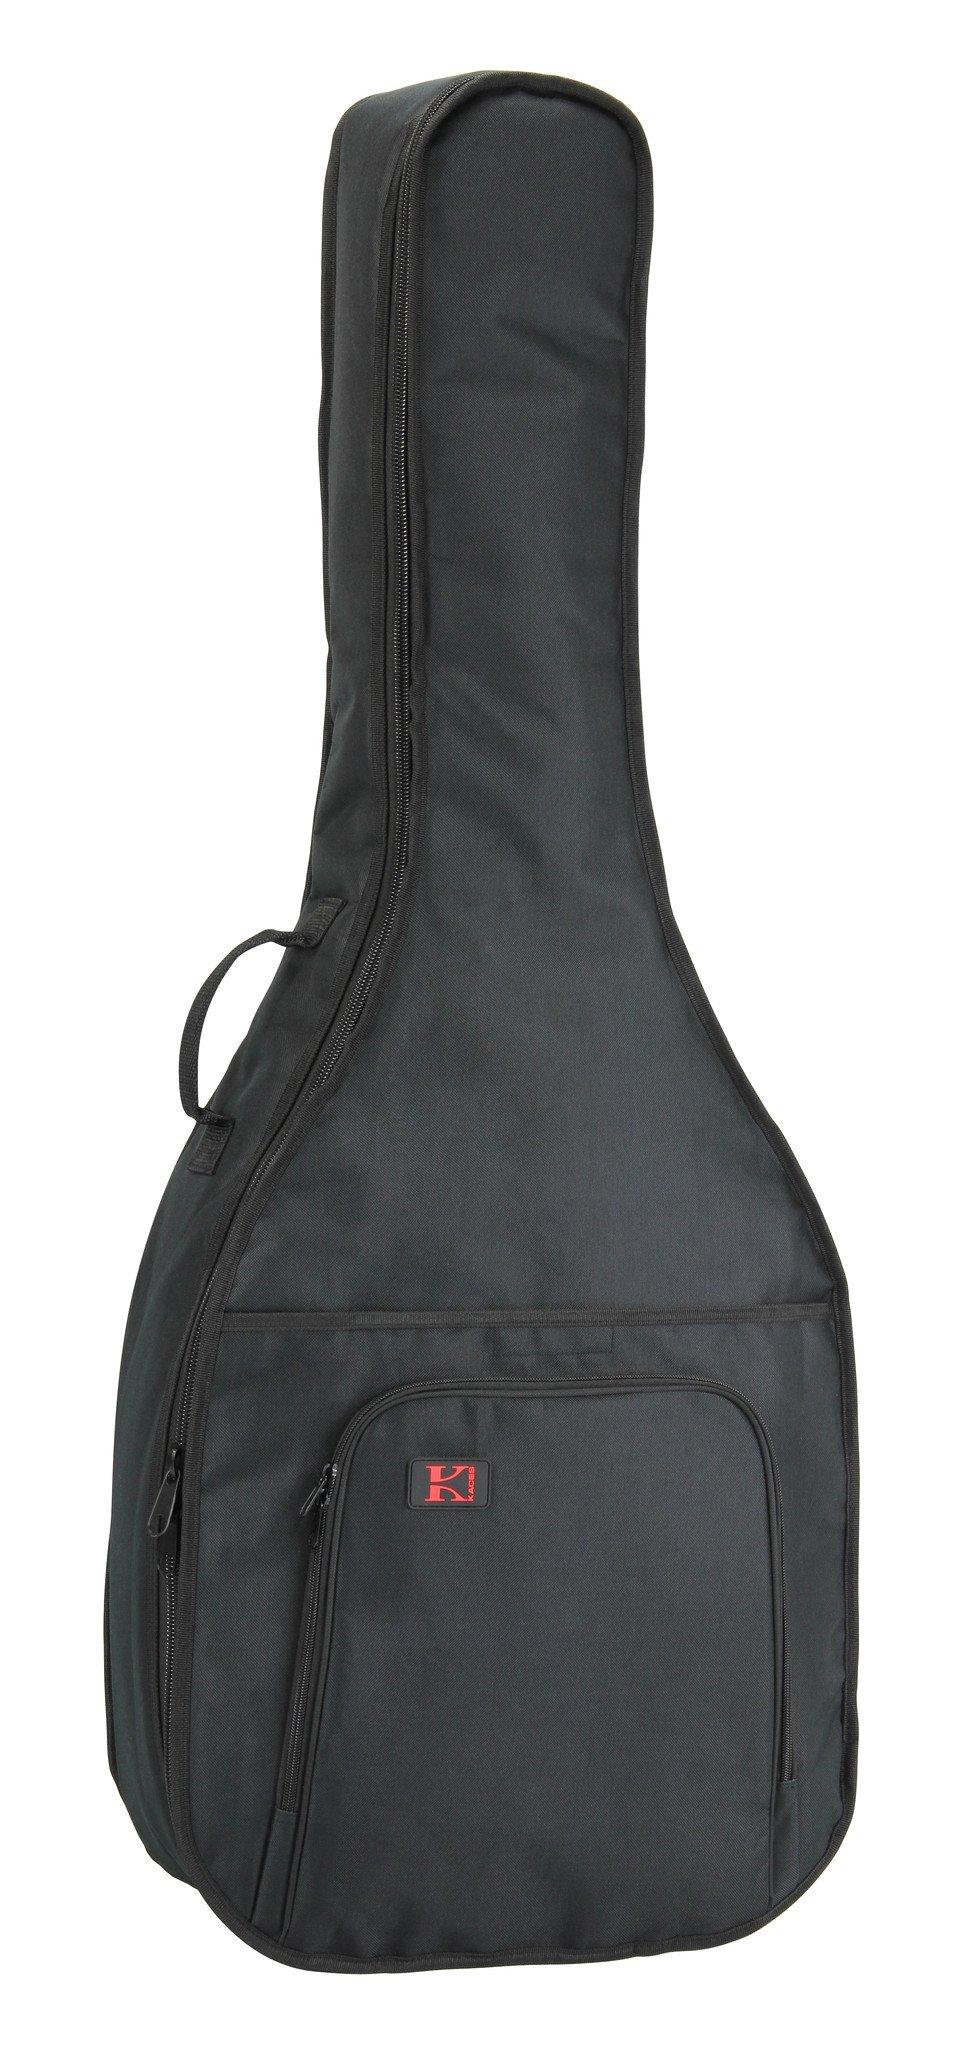 GigPak Acoustic Guitar Bag